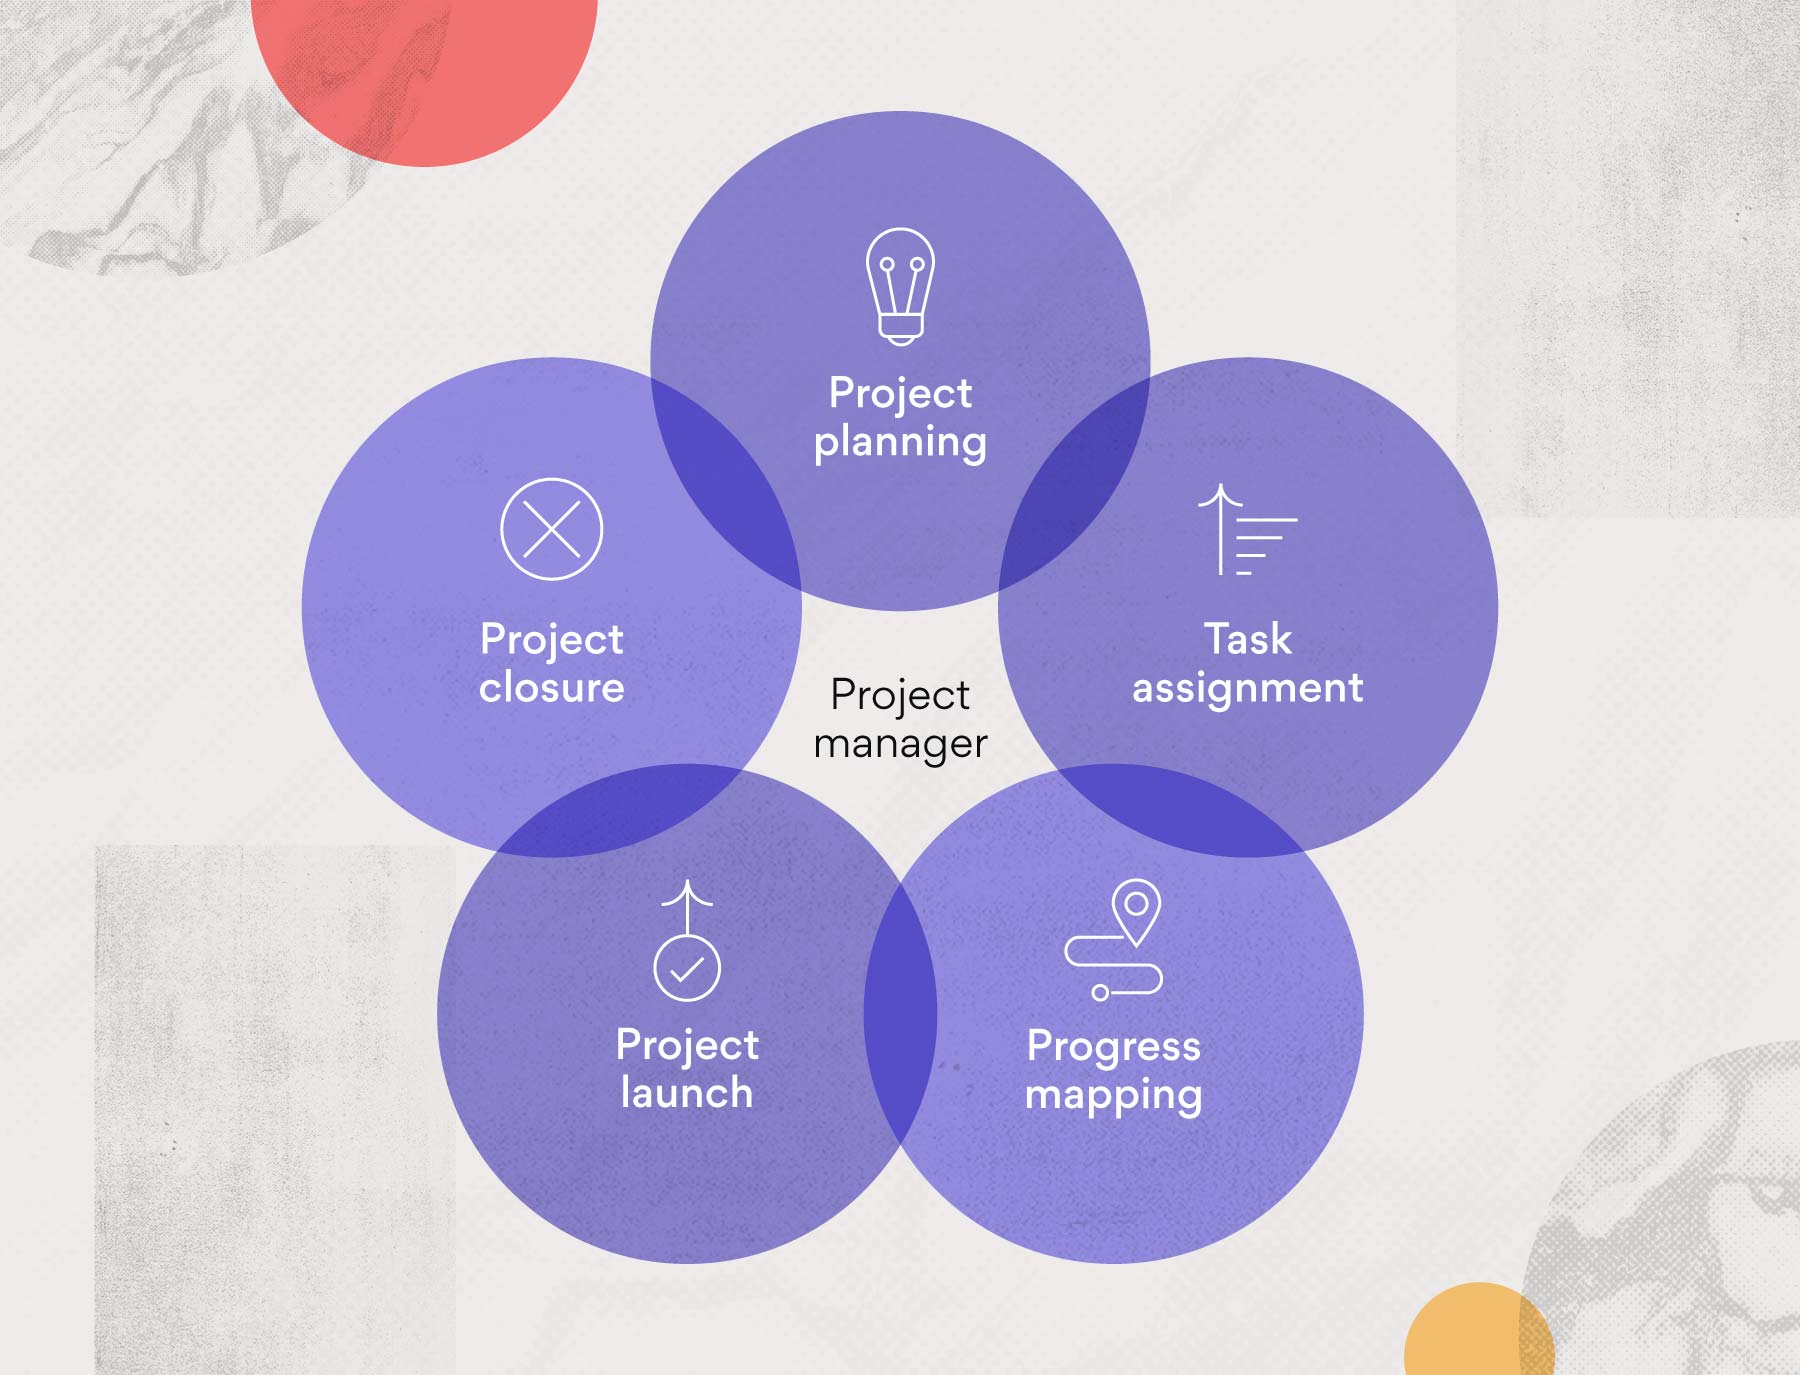 Vad är en projektledare?